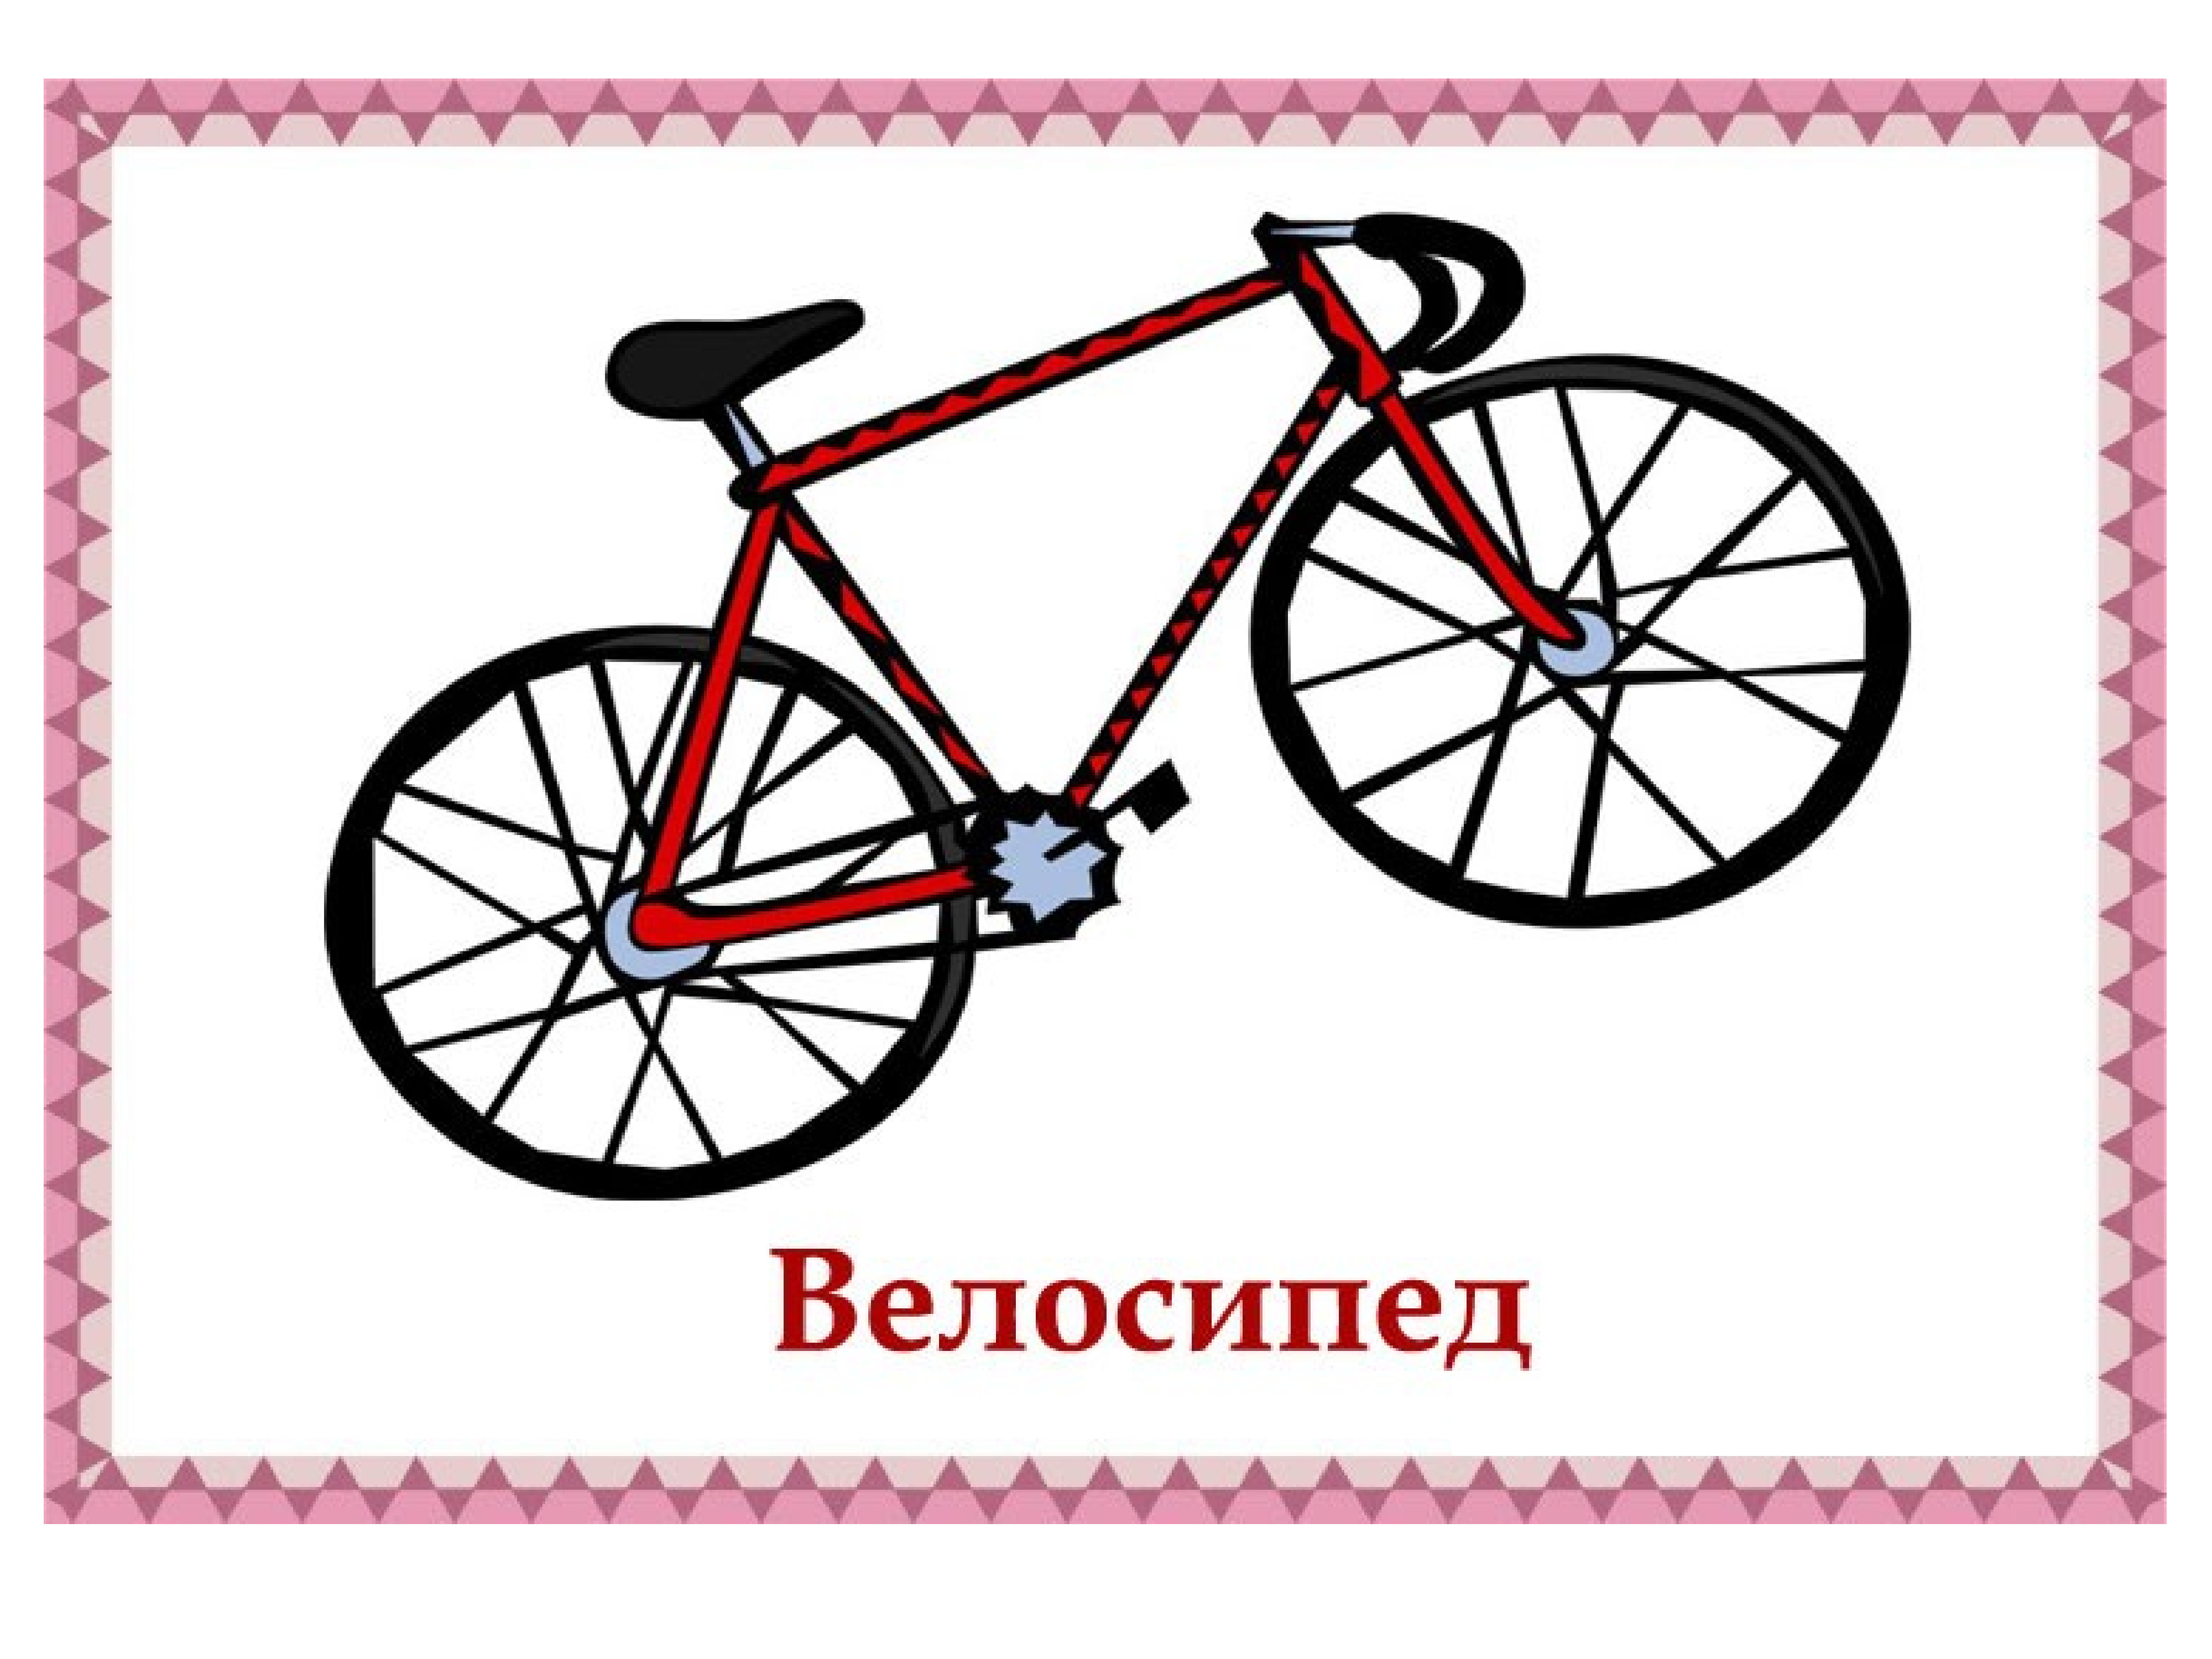 Байки на английском. Велосипед карточки для детей. Карточки с изображением транспорта. Велосипед рисунок. Транспорт картинки для детей дошкольного возраста.